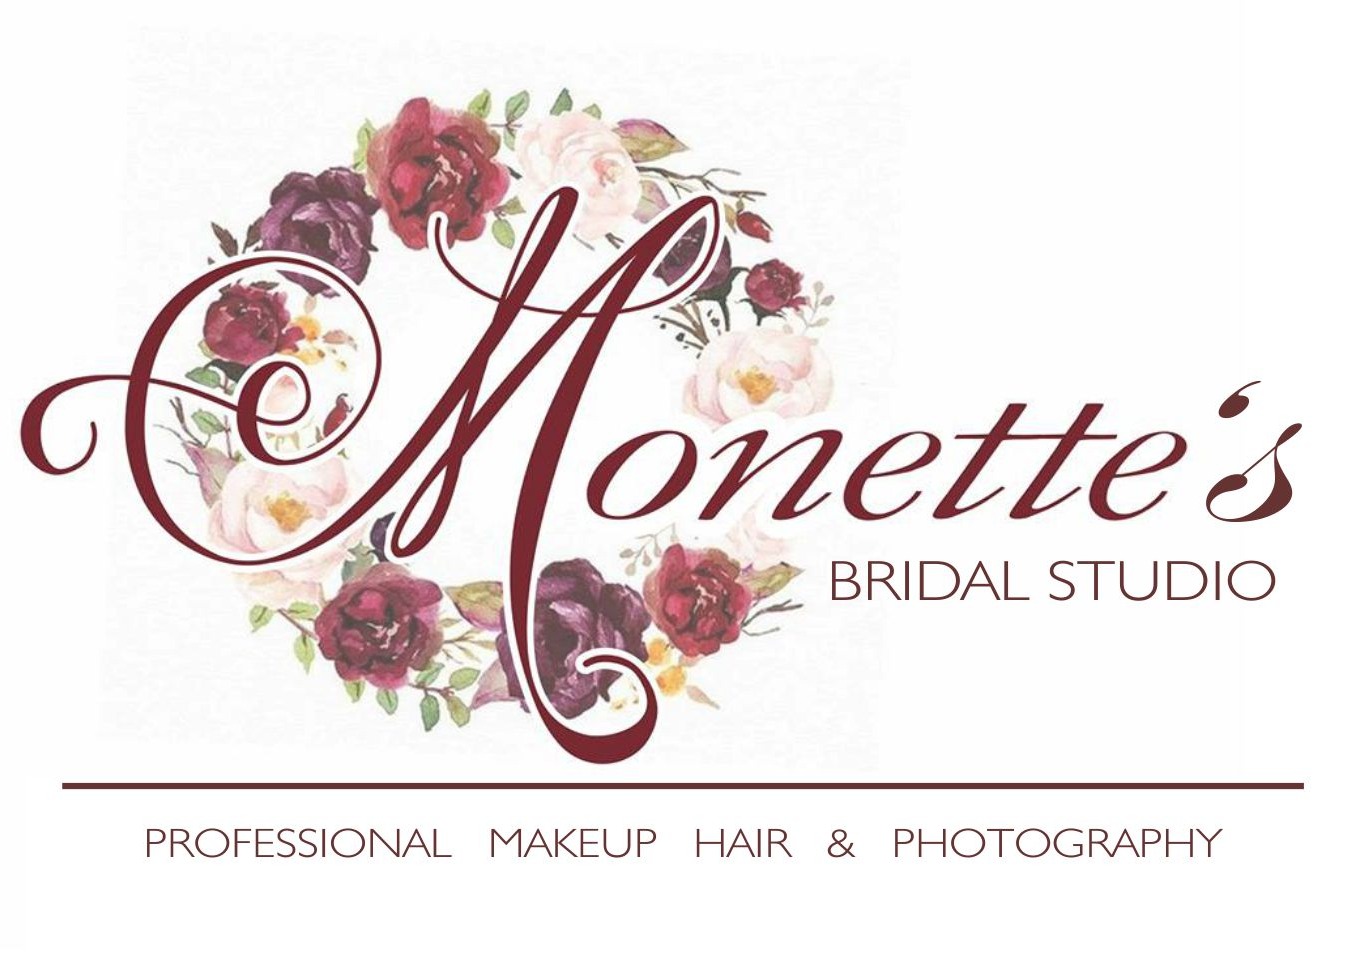 Monette's Bridal Studio